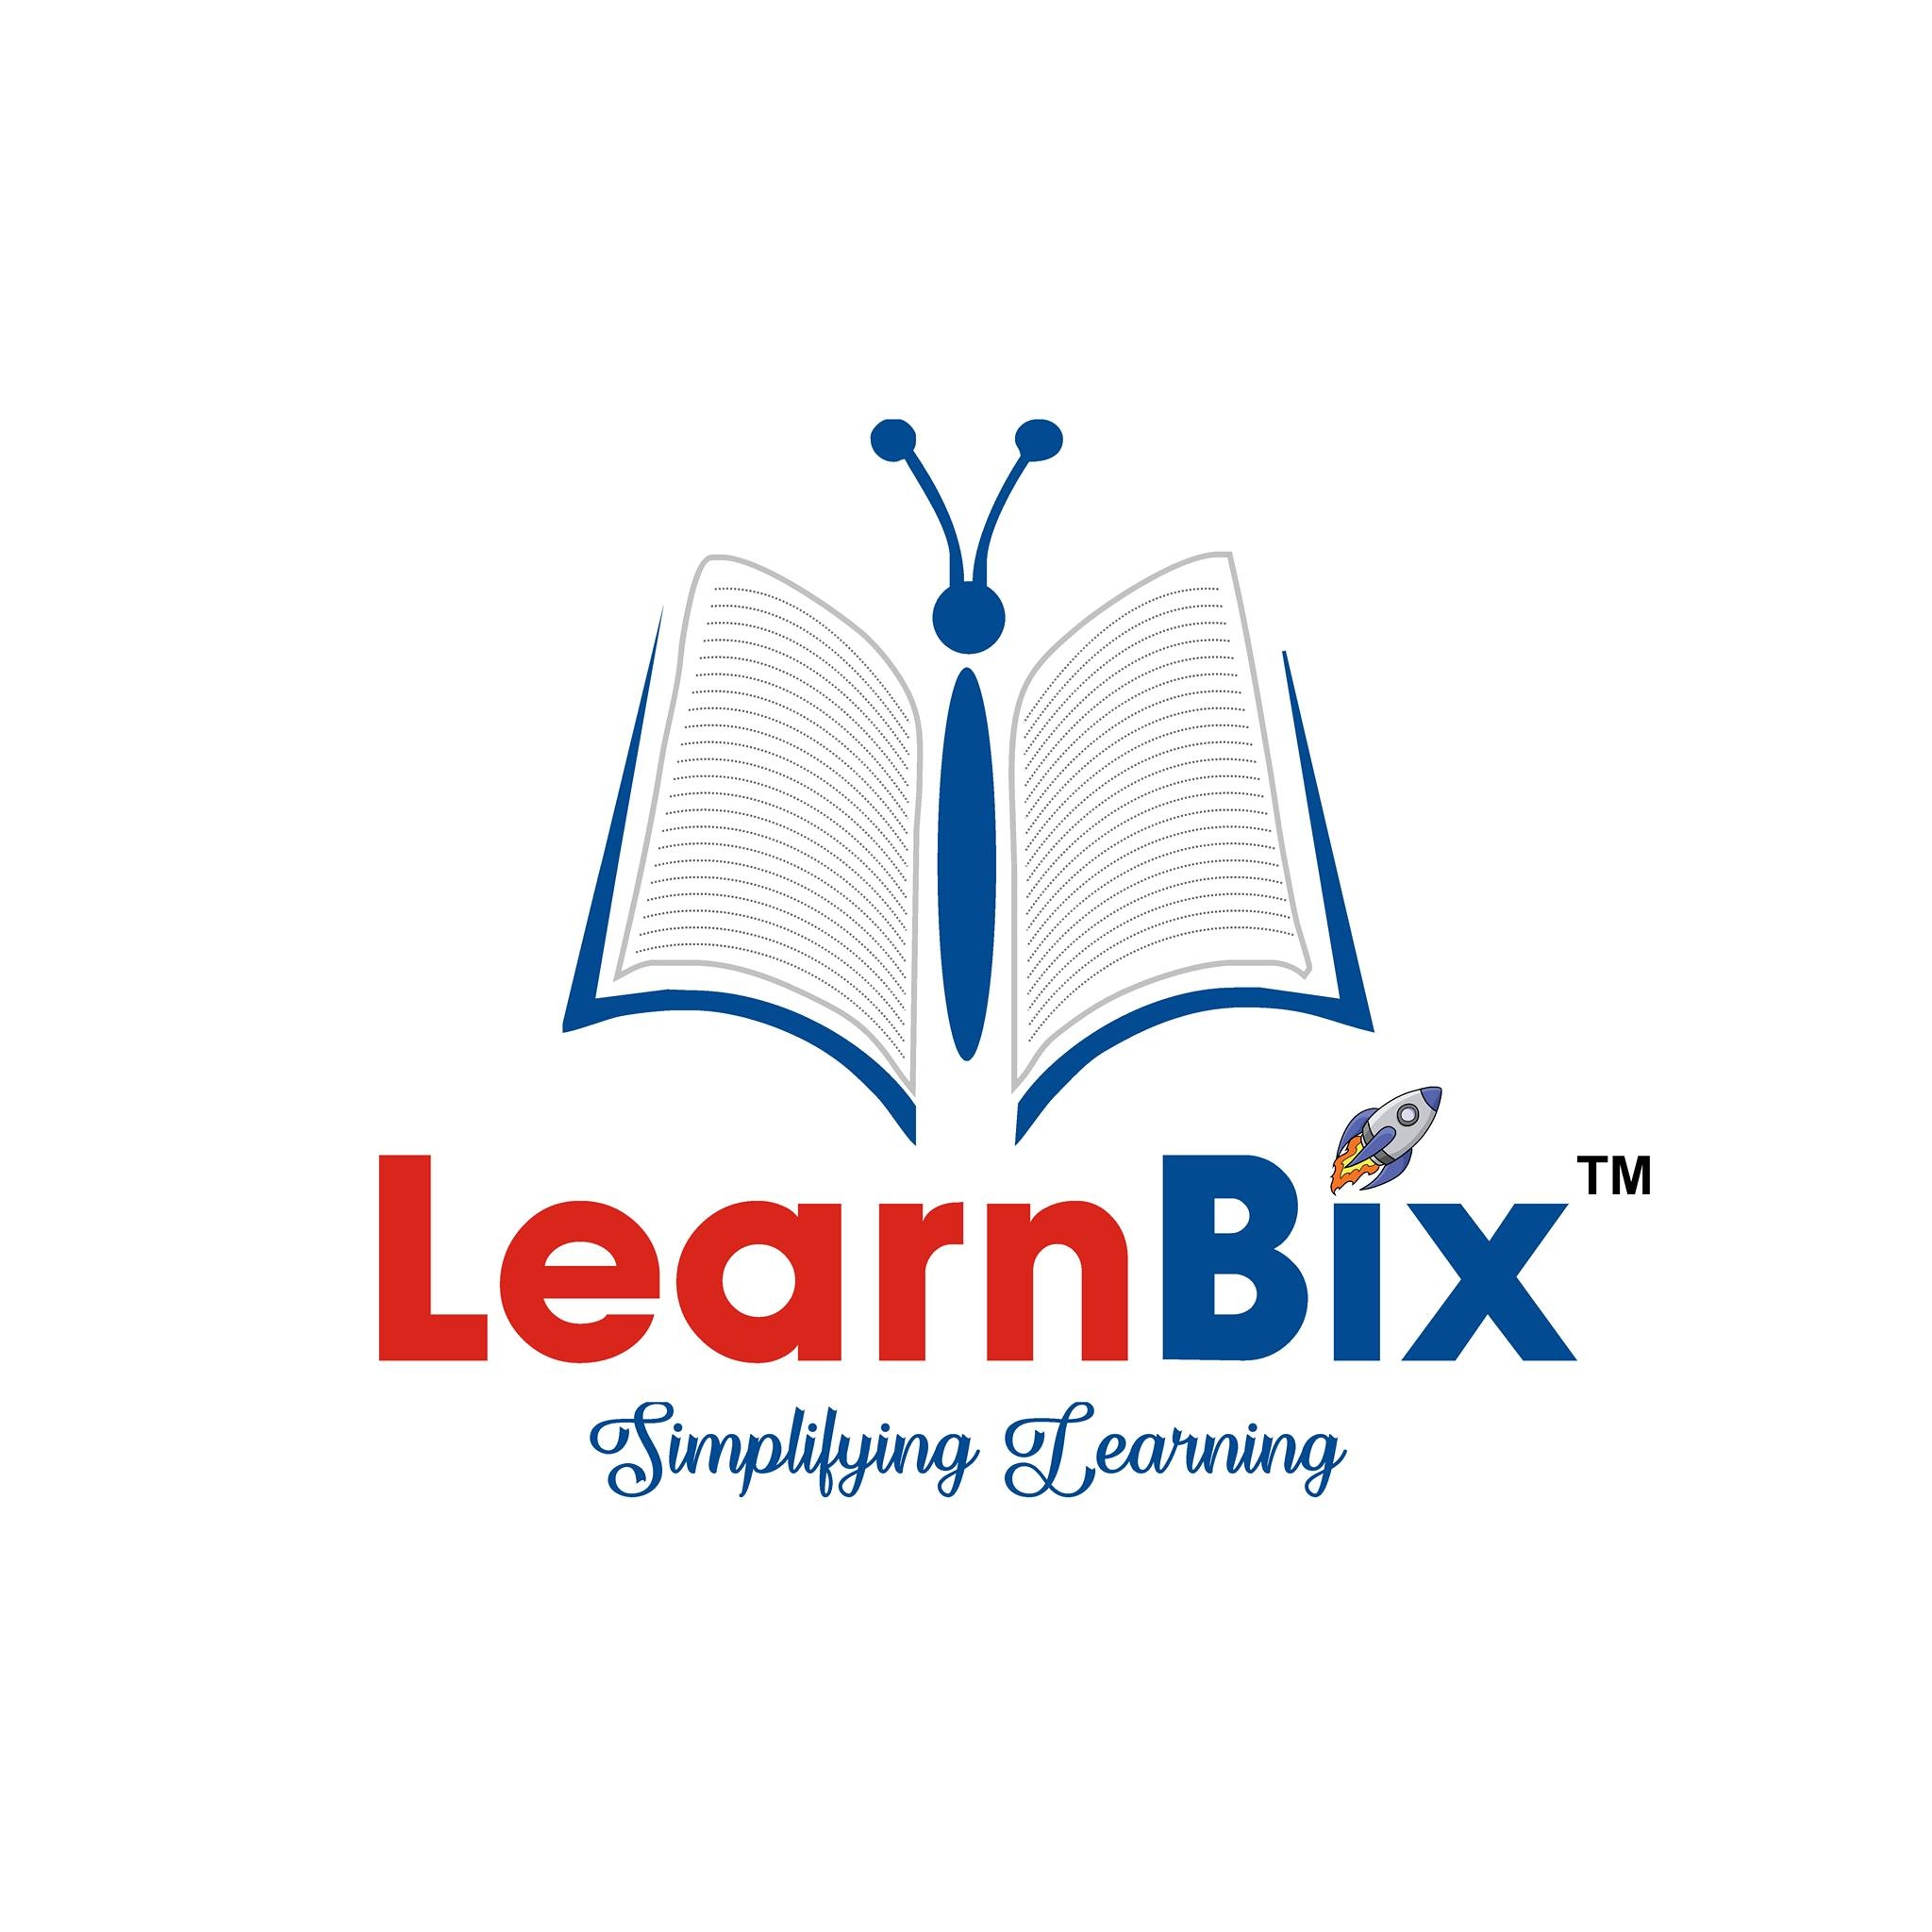 Learnbix